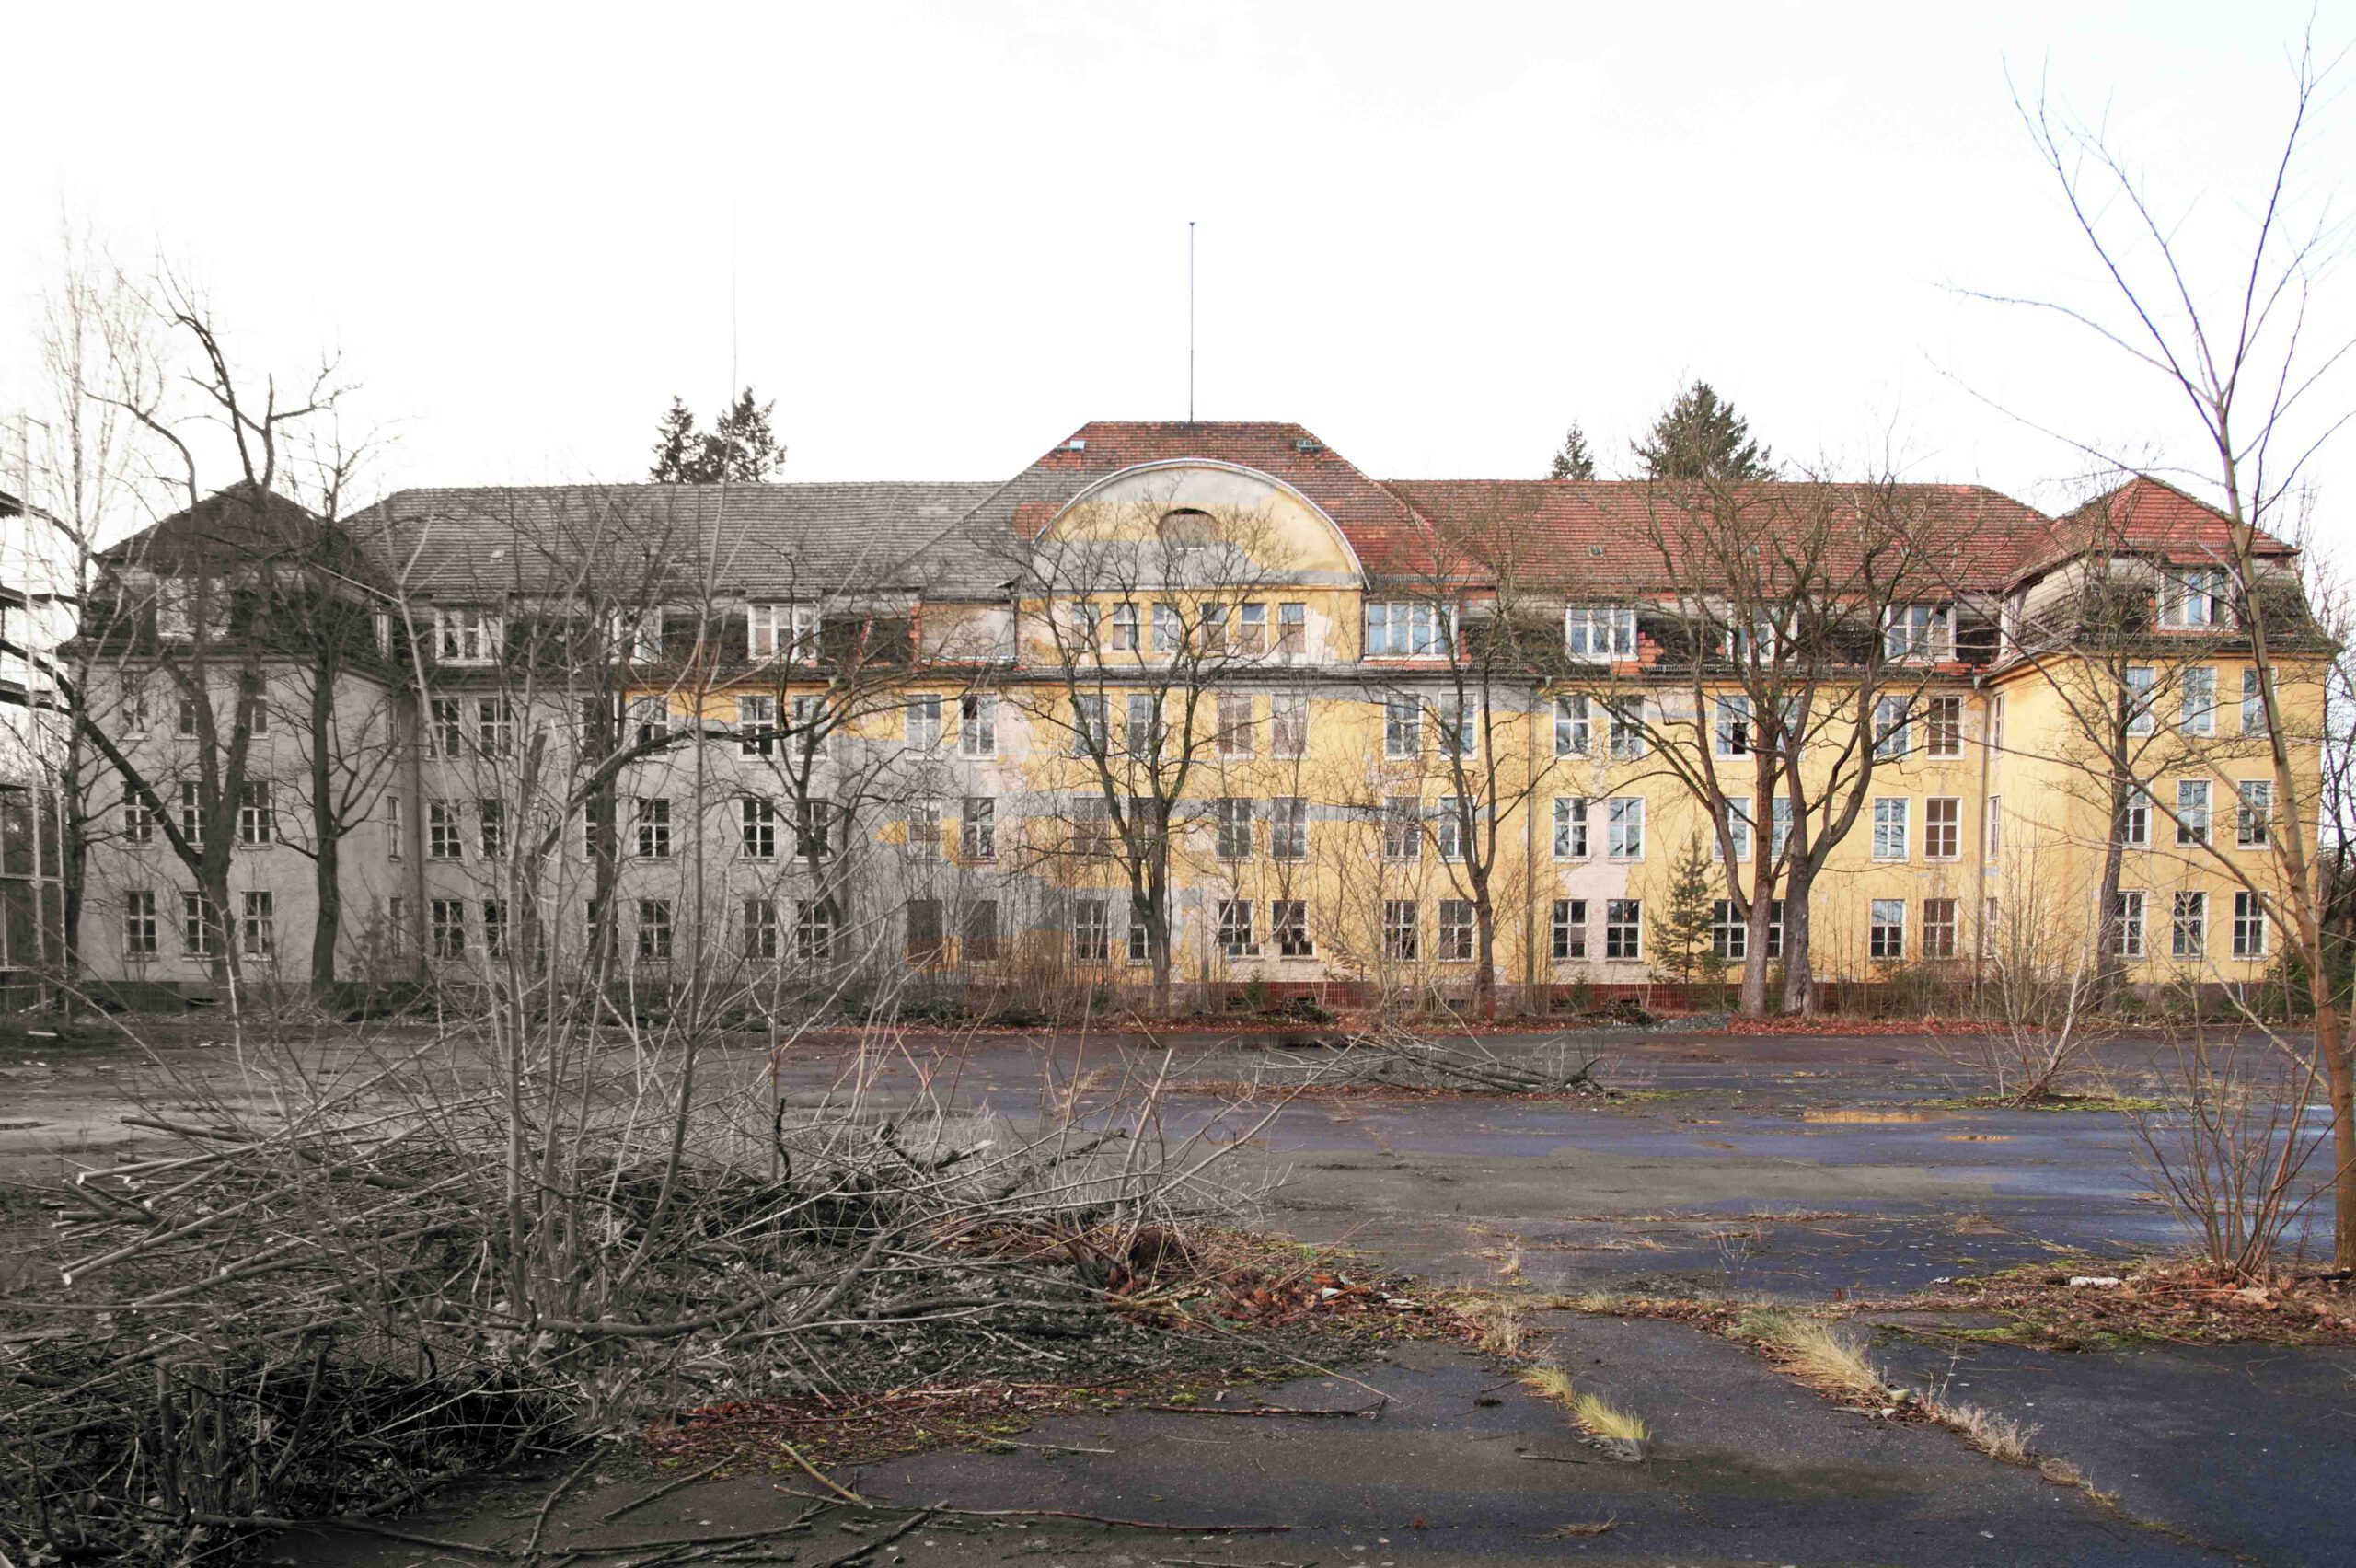 Bild vom Mannschaftsgebäude in Wünsdorf. Foto wurde so bearbeitet, dass man im Bild einen Übergang zwischen schwarz-weiß und Farbfoto sieht.